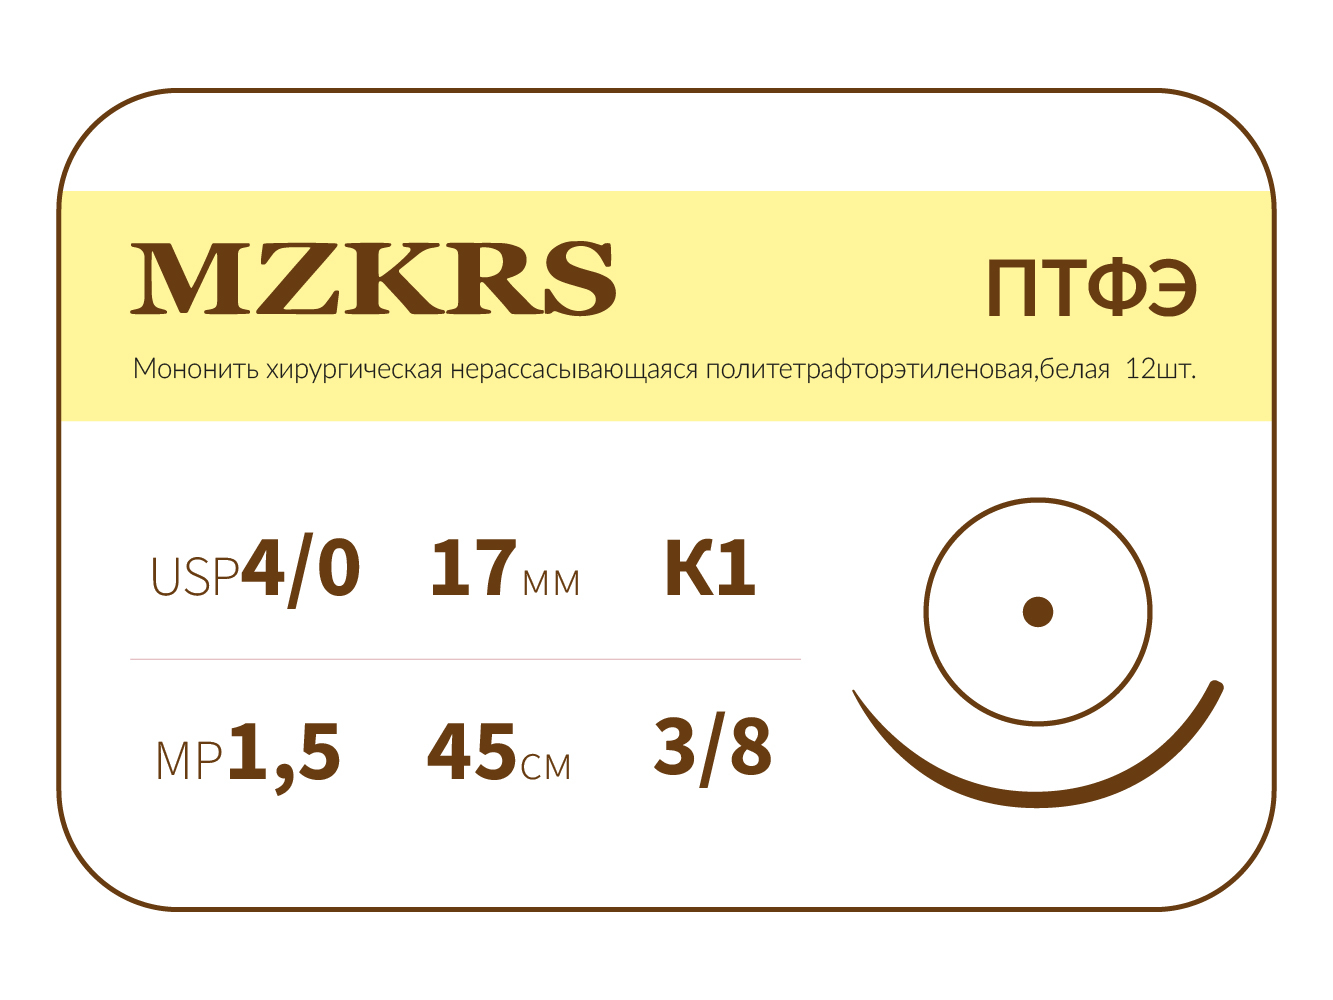 1738К-Premium 4/0 (1.5) 45 ПТФЭ хирургическая нить политетрафторэтиленовая, MZKRS (Россия)